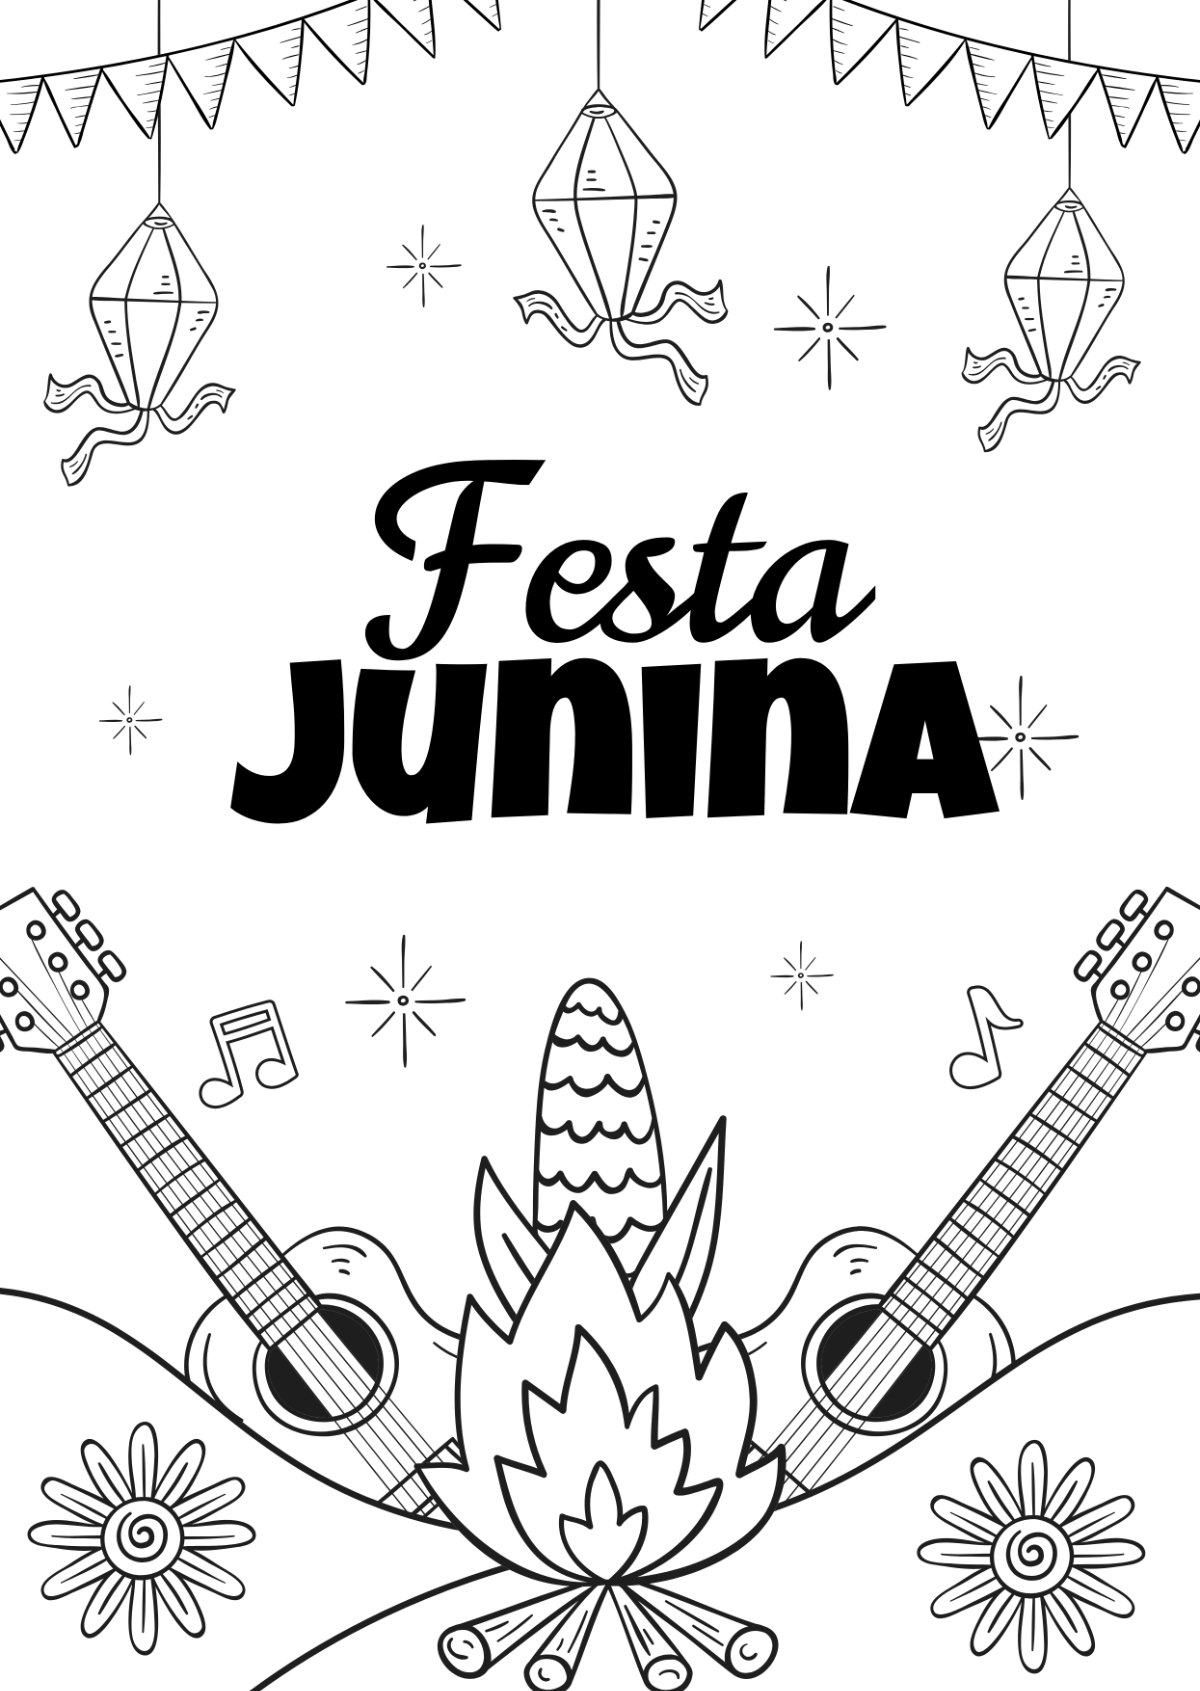 Festive Festa Junina Drawing